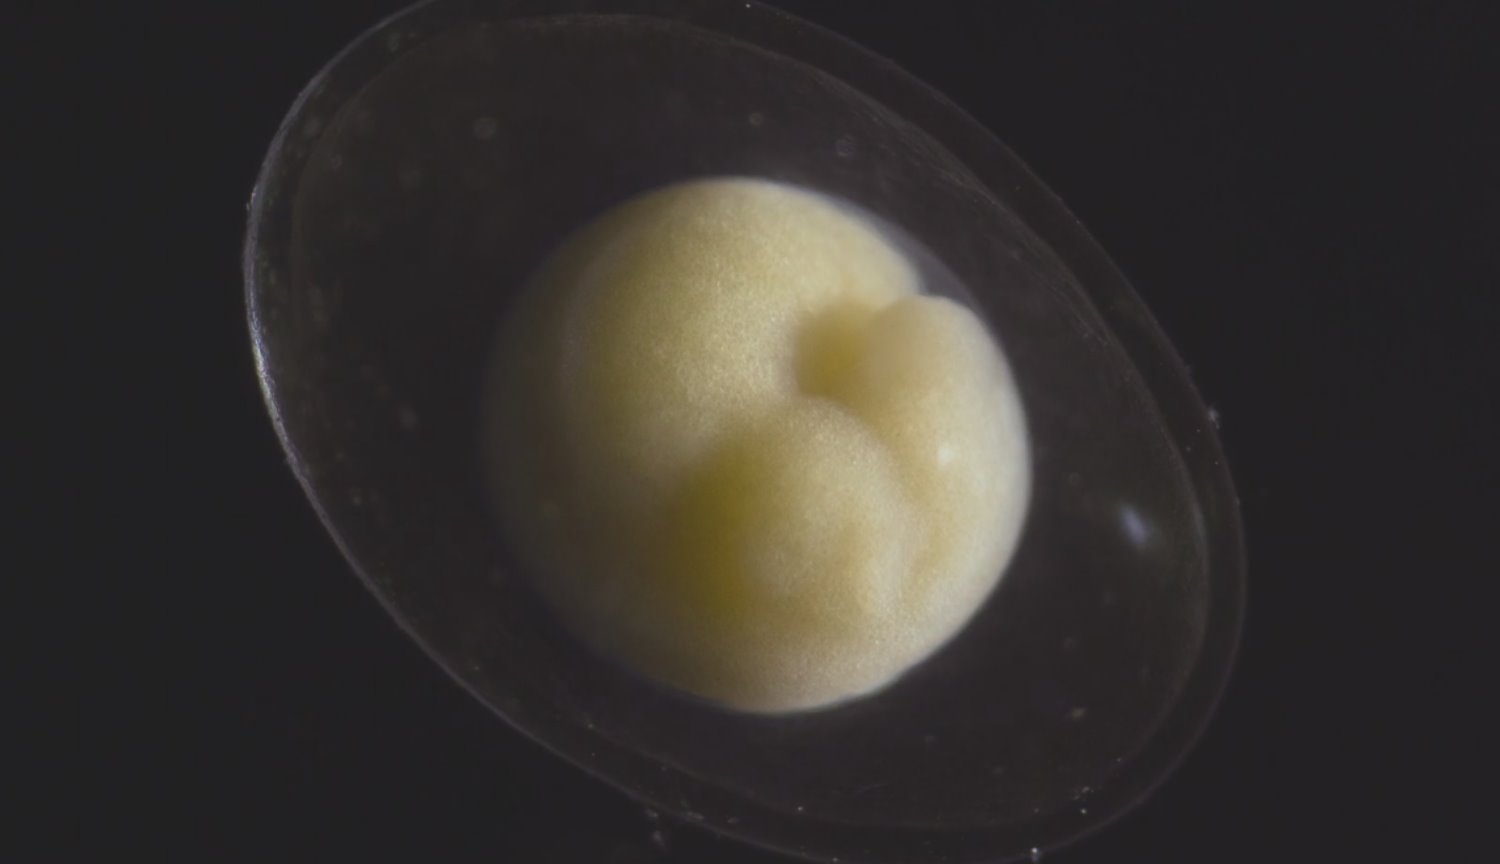 #vídeo | Como um minúsculo embrião se transforma em um lindo organismo vivo?